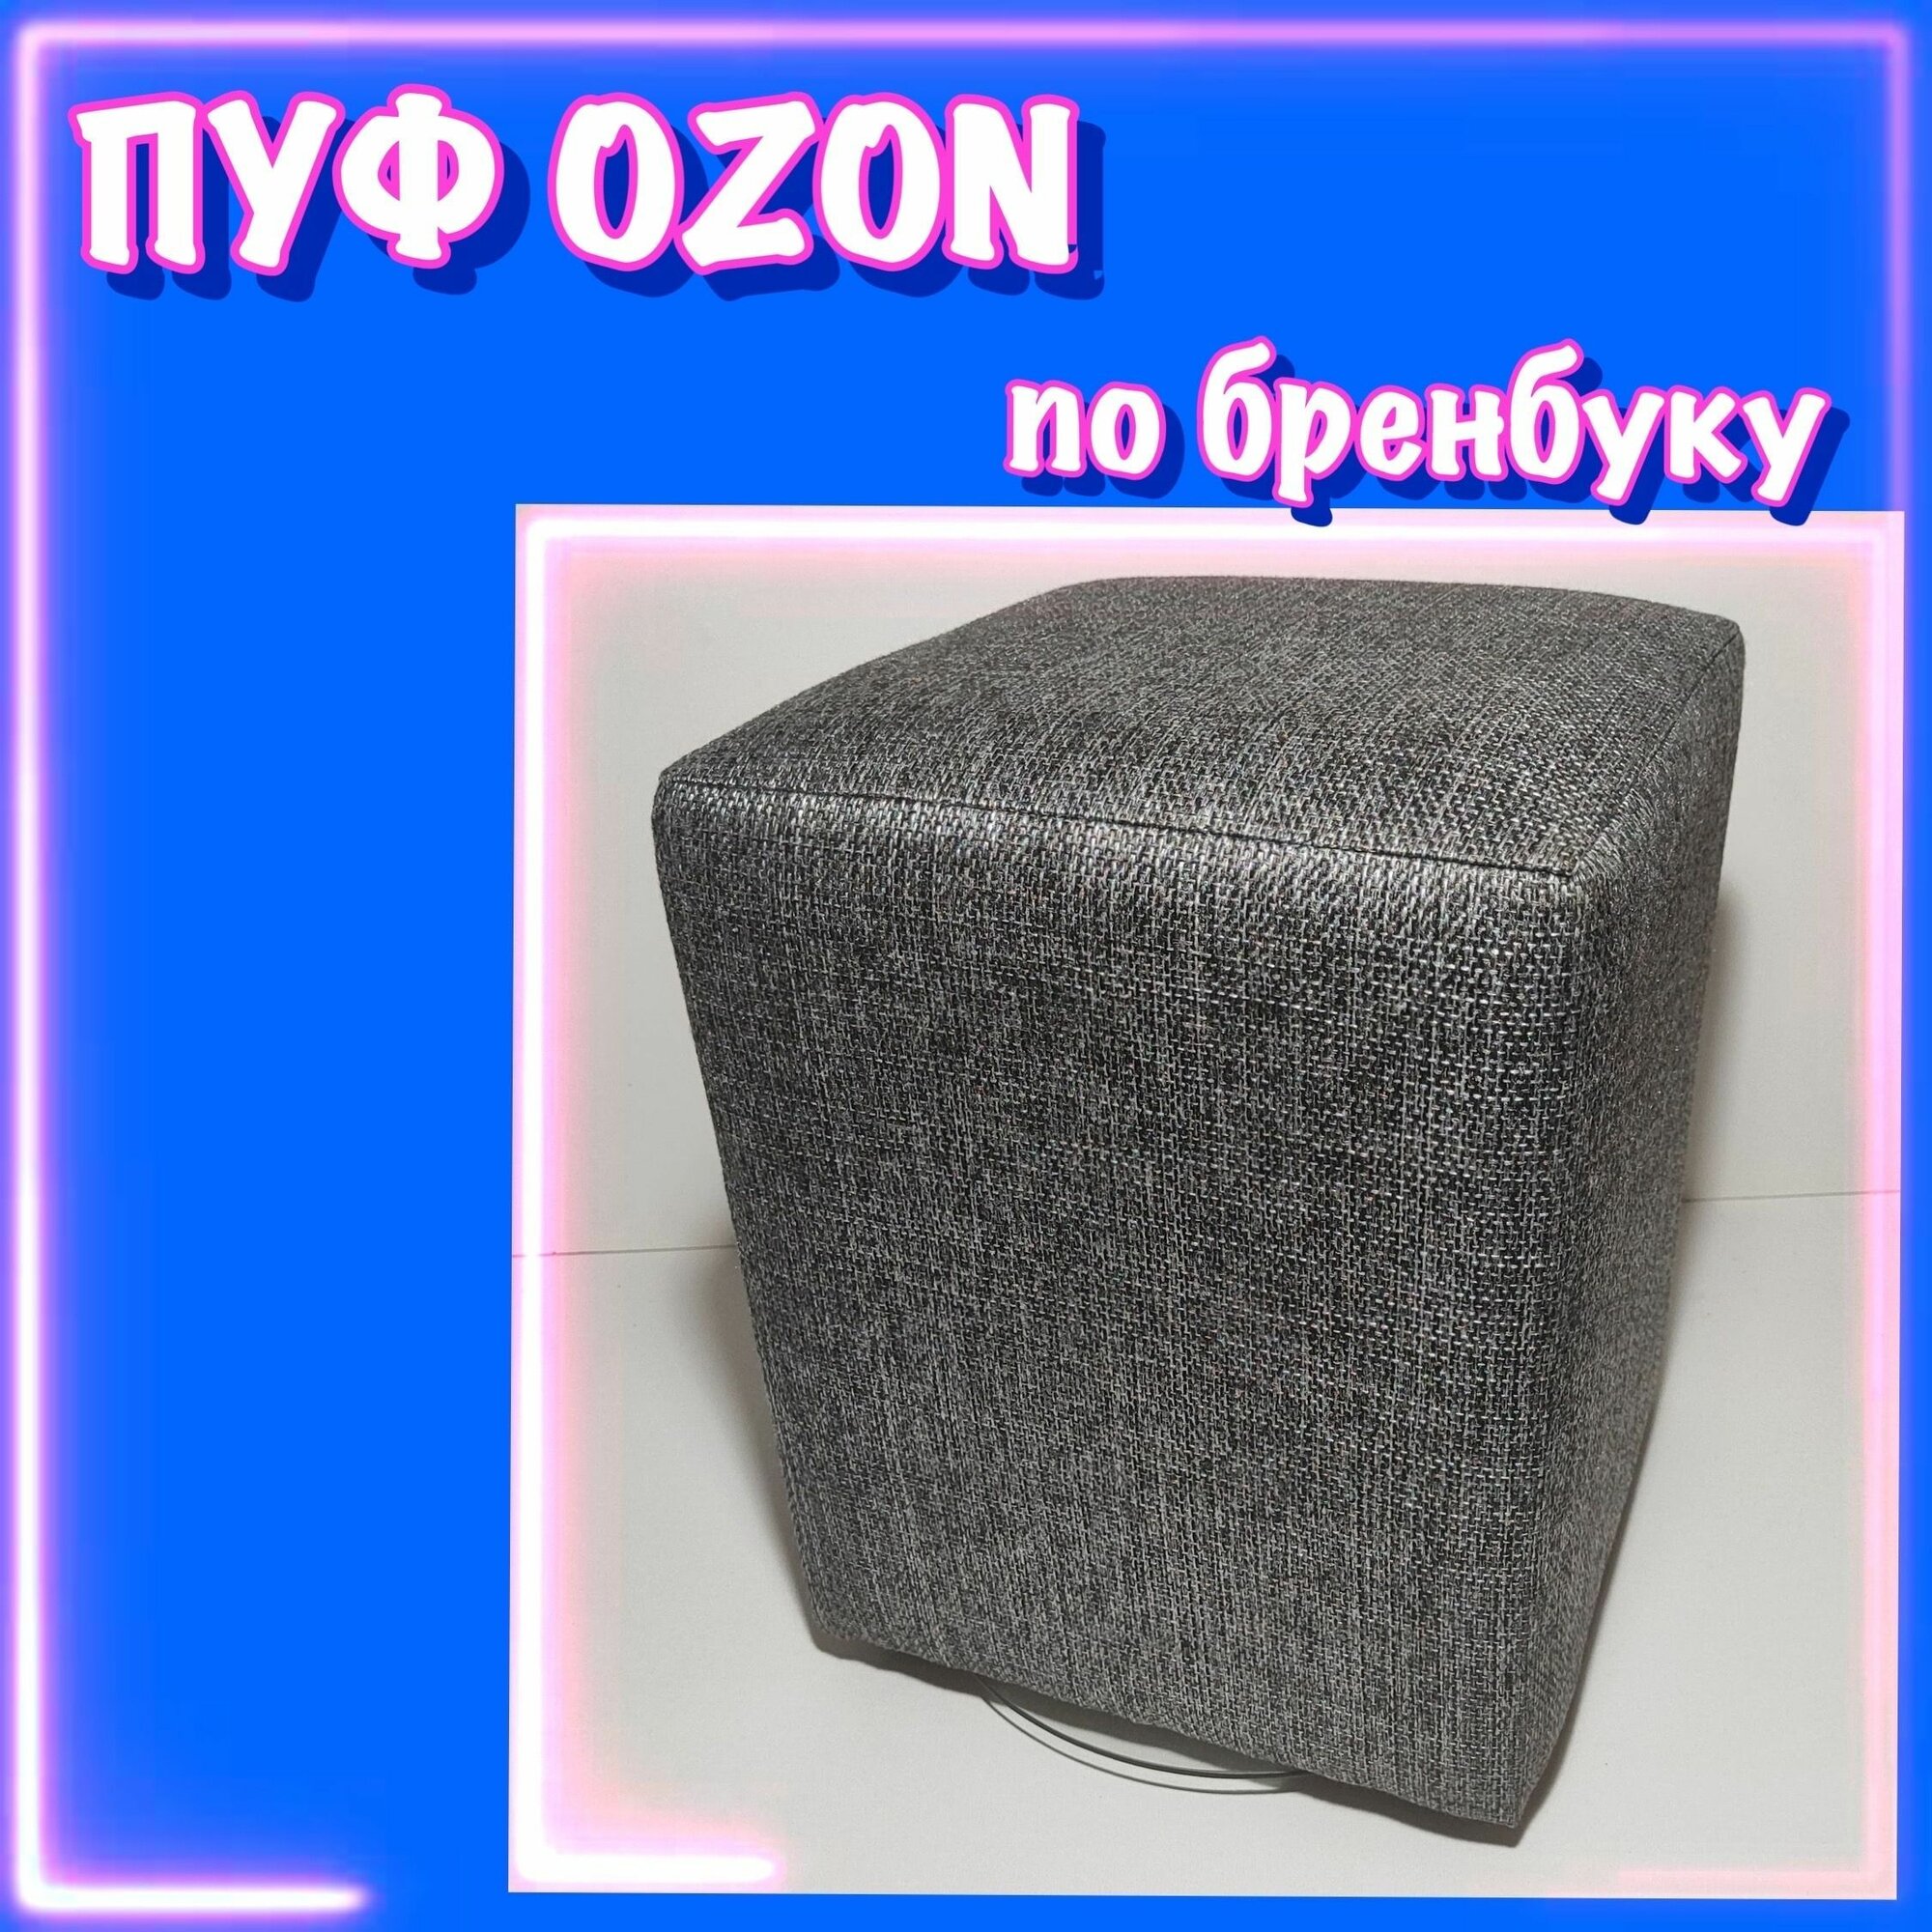 Пуф OZON, пуфик для ПВЗ озон, в примерочную ПВЗ озон, по брендбуку, Рогожка, 35х35х42 см, серый